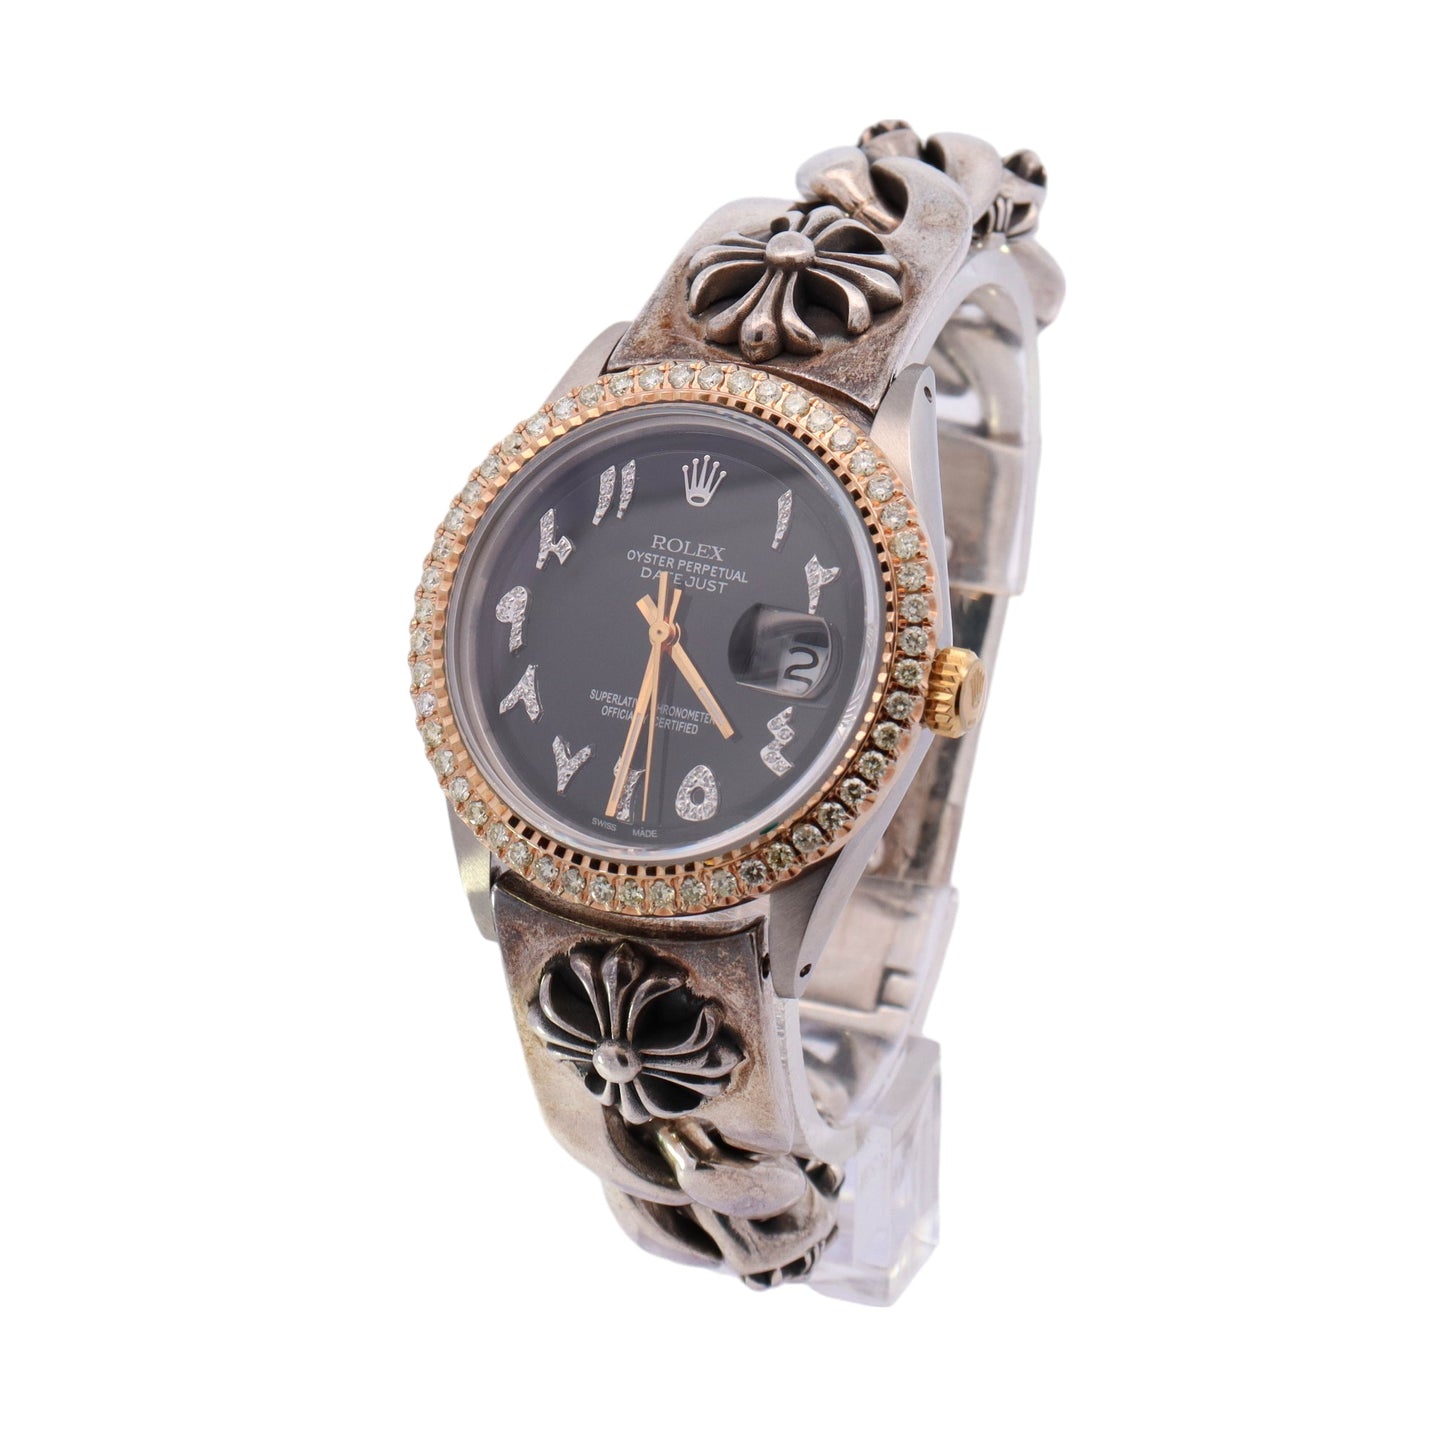 Rolex Datejust Stainless Steel 36mm Custom Arabic Diamond Dial Watch Reference# 1601 - Happy Jewelers Fine Jewelry Lifetime Warranty